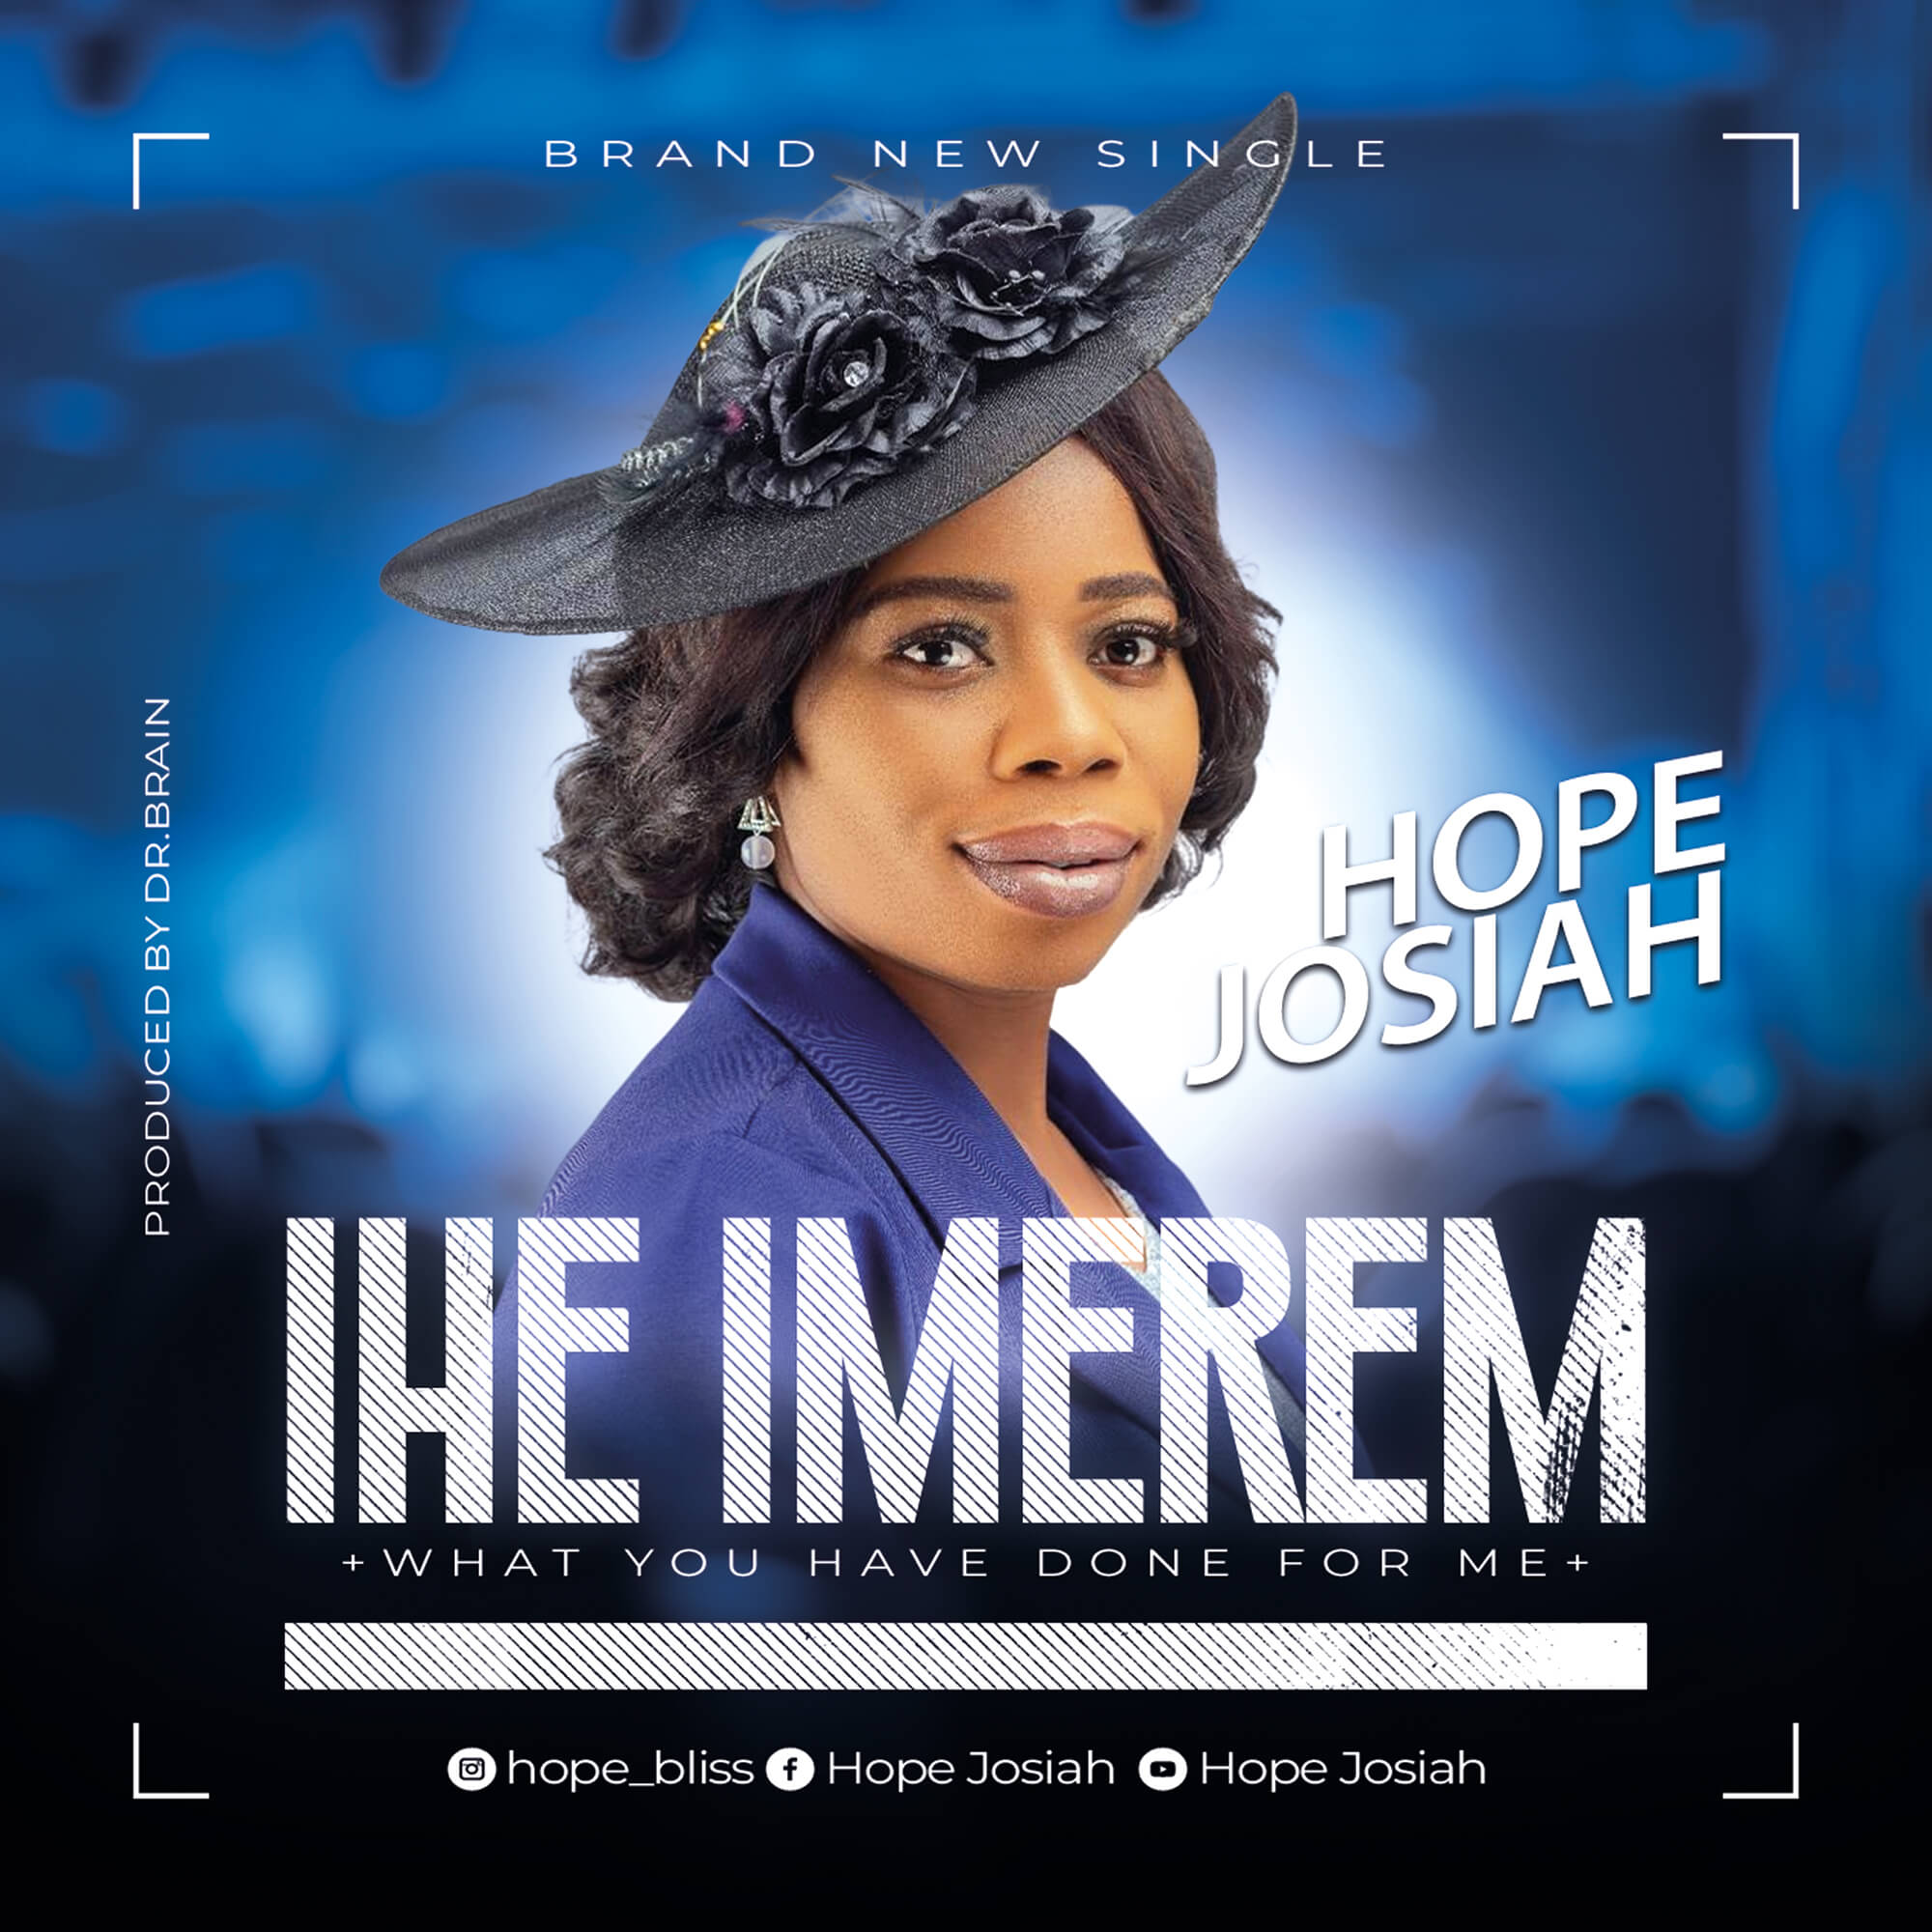 Music + Lyrics: IHE IMEREM - Hope Josiah